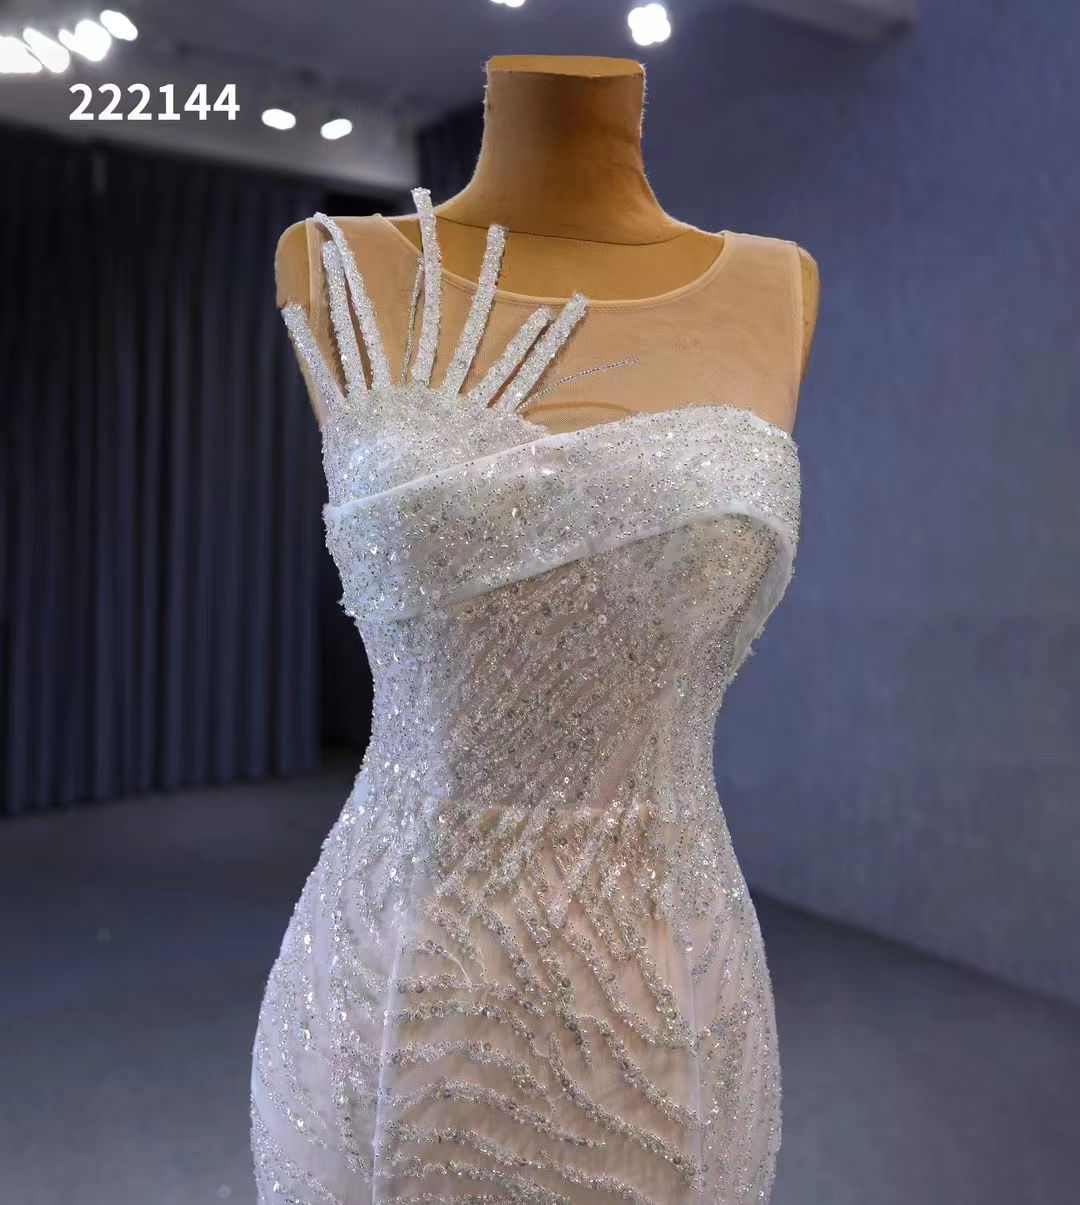 Nowoczesna suknia ślubna Biała syrenka cekinowa bez rękawów długość podłogi SM222144